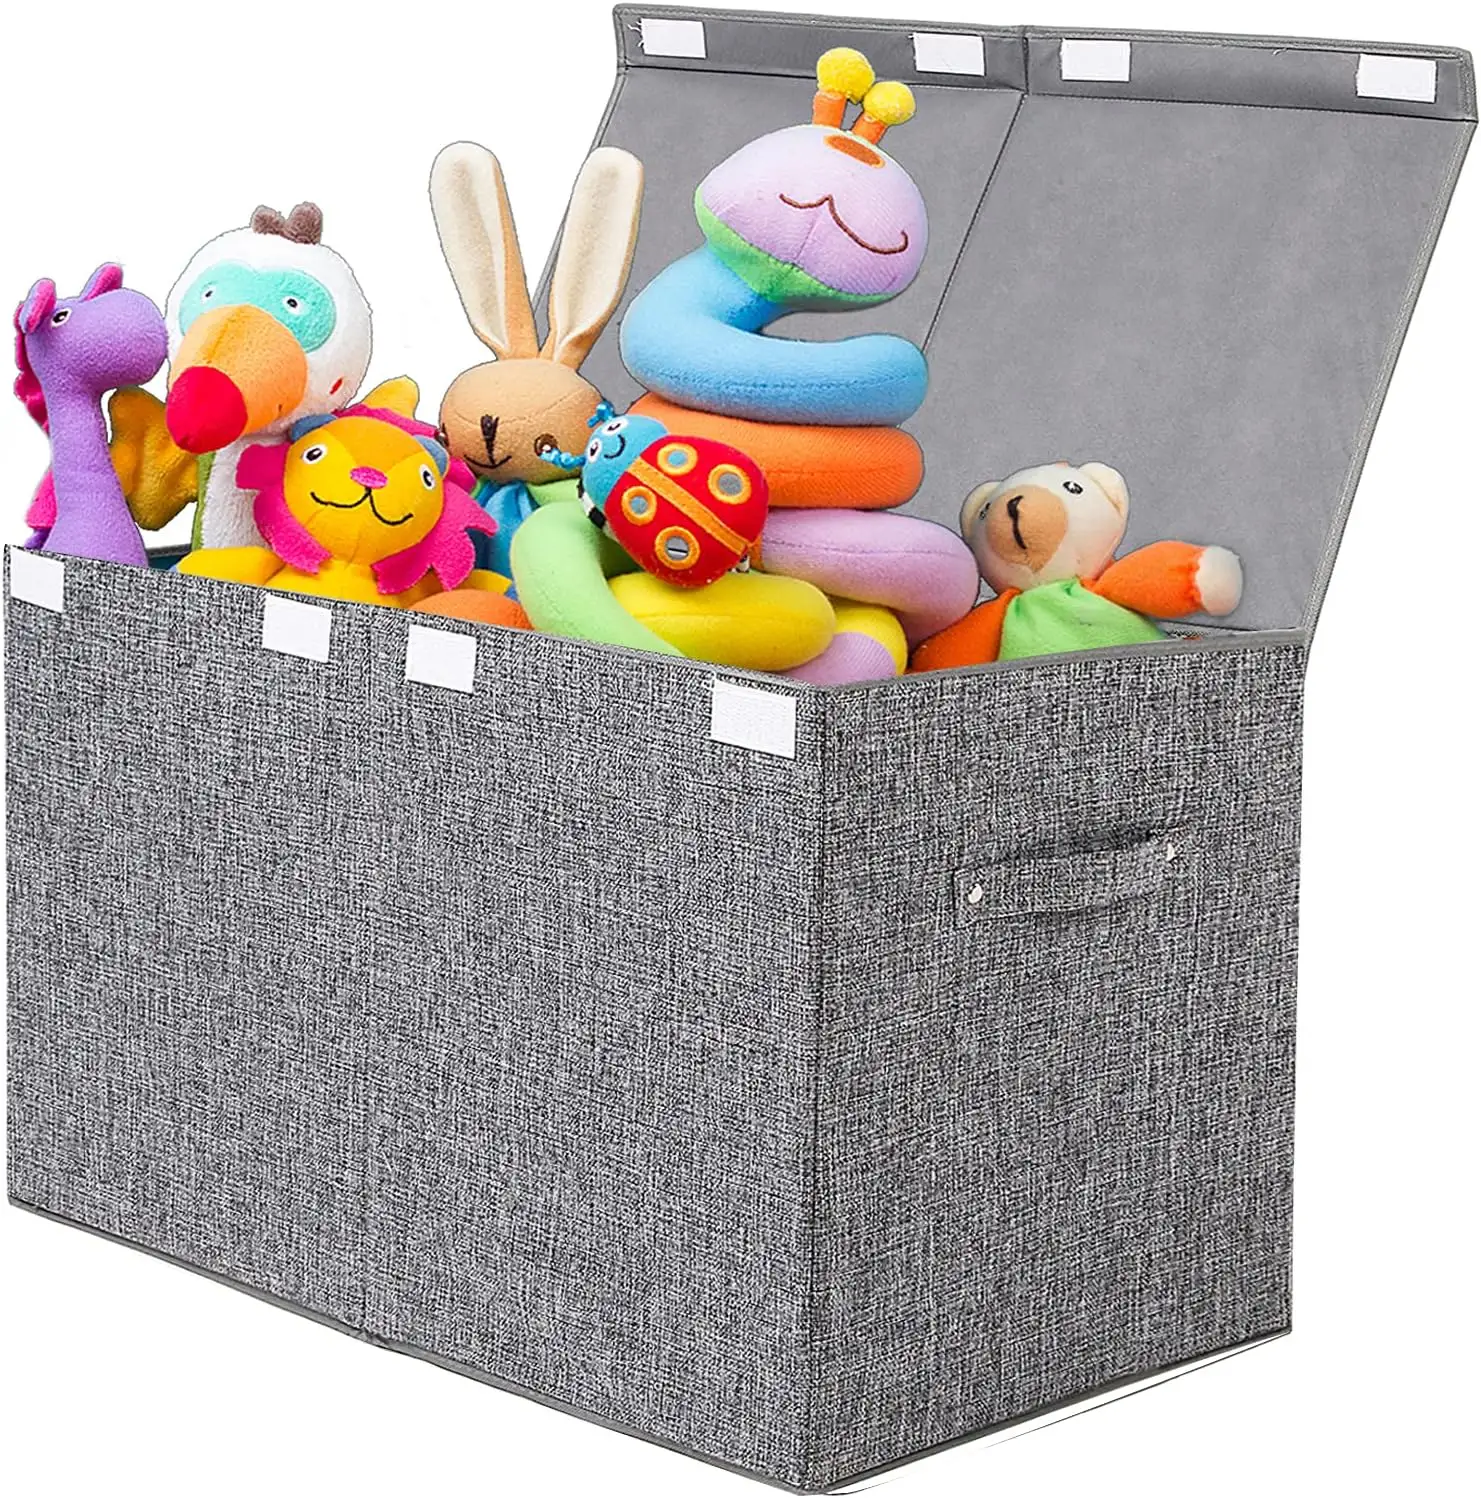 Grande scatola dei giocattoli con coperchio pieghevole robusto giocattolo organizzatore scatole bidoni cestini per bambini bambini bambini ragazze stanza dei giochi